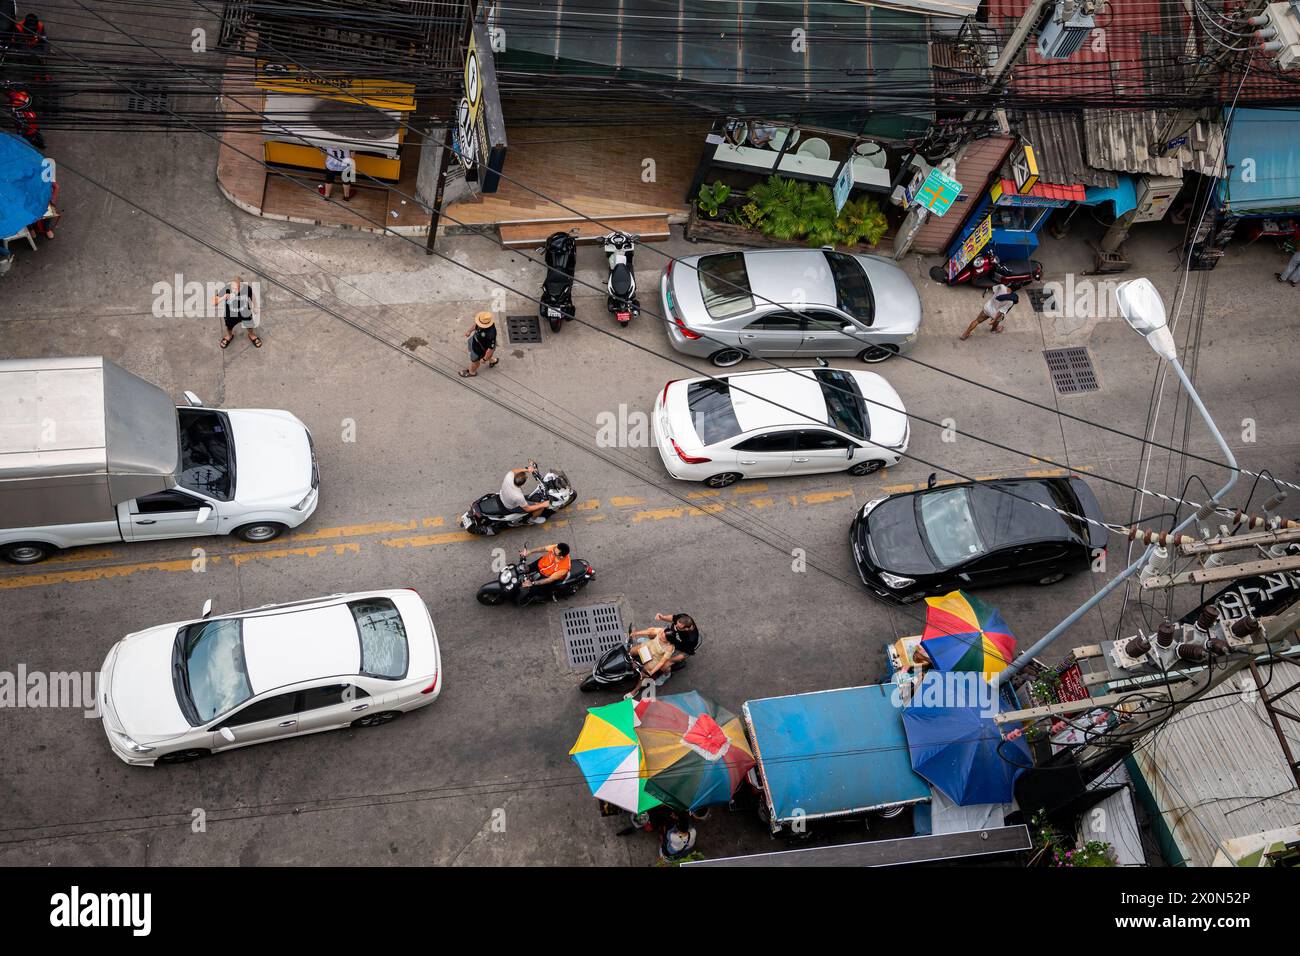 Ariel drehte mit Blick auf Soi Buakhao, eine Hauptstraße im Norden von Pattaya City, Thailand, die Taxis, Fahrräder, Autos und Baht-Busse zeigt. Stockfoto